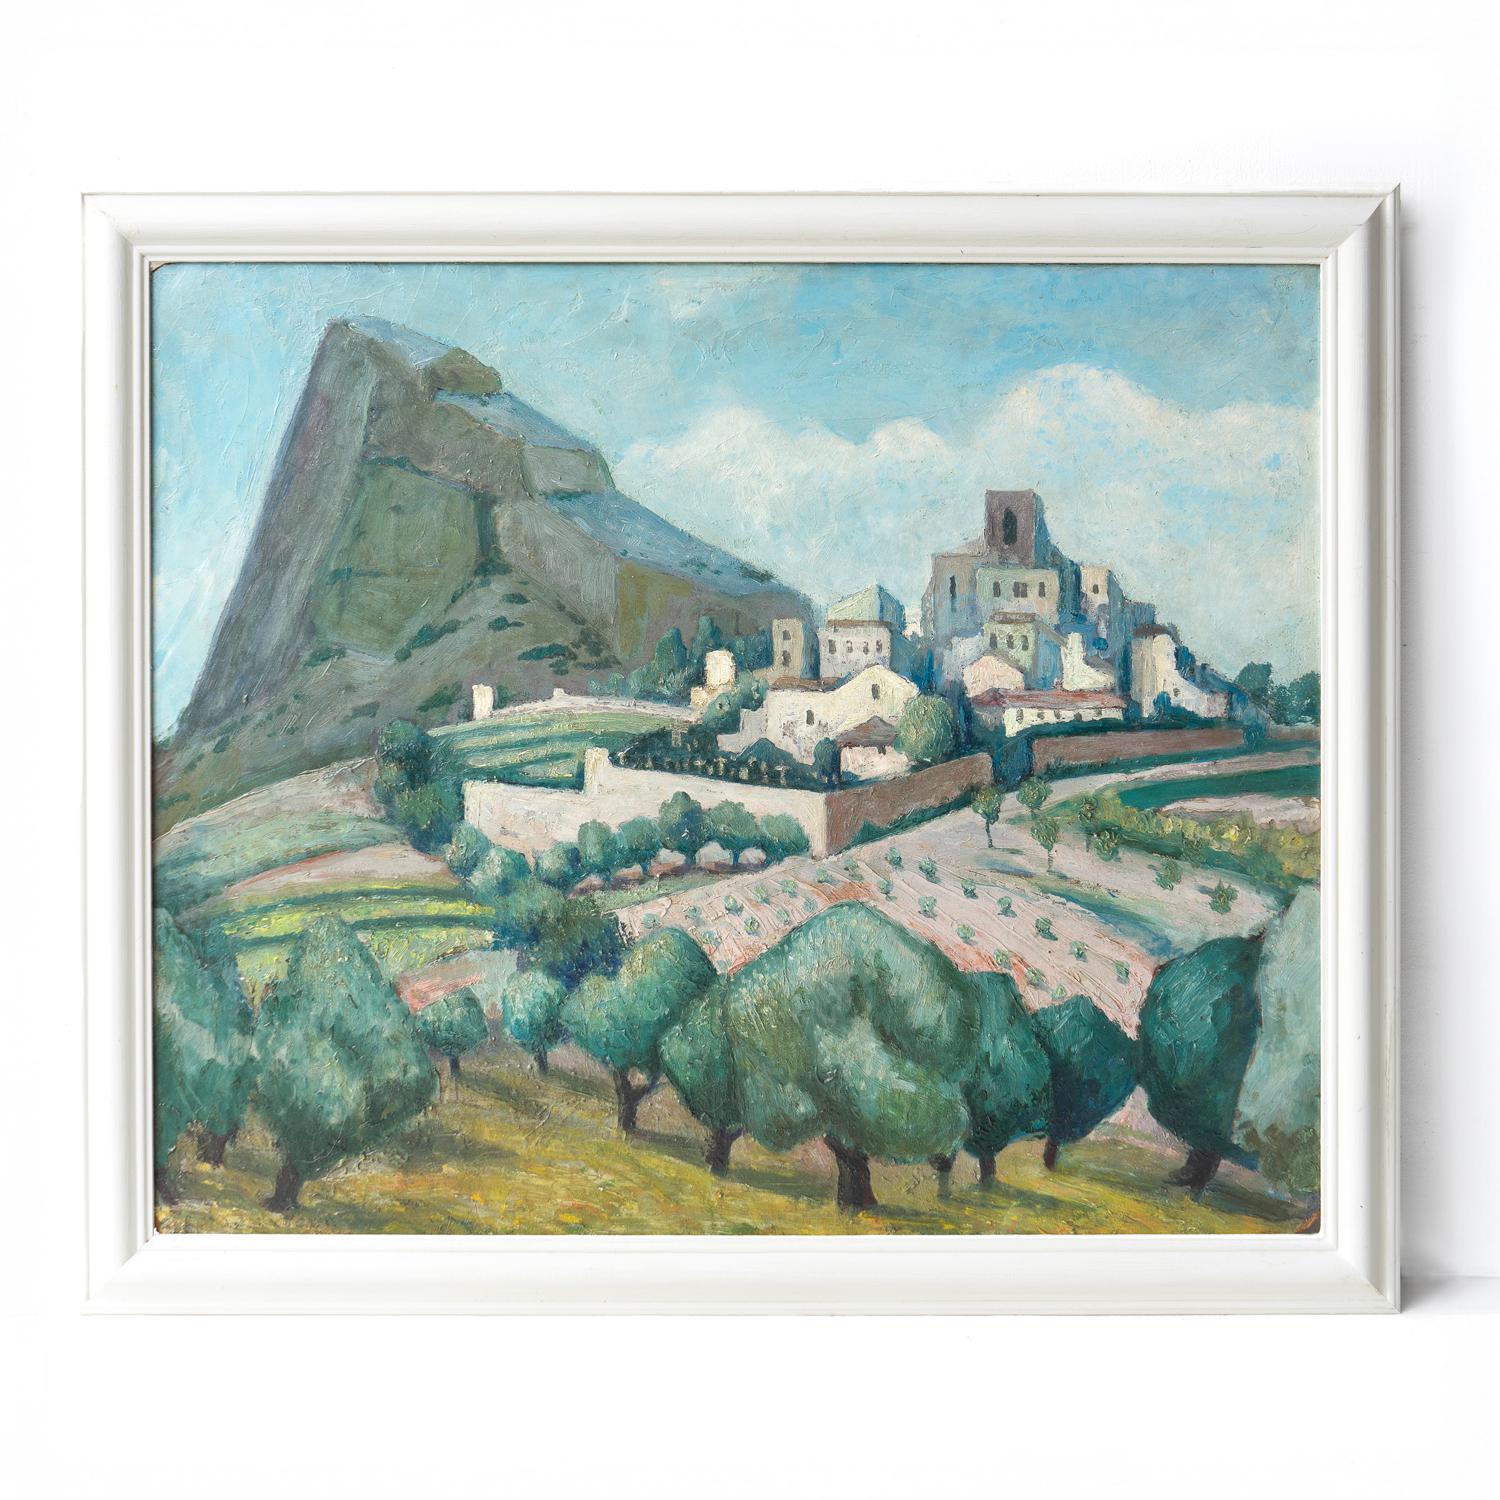 ANTIKES ORIGINALGEMÄLDE IN ÖL AUF KARTON

Darstellung einer Szene, die vermutlich ein Dorf in Südfrankreich zeigt, mit einem Berg im Hintergrund. Die Form der Gebäude des Dorfes spiegelt sich in der Form des Berges wider. Im Vordergrund sind